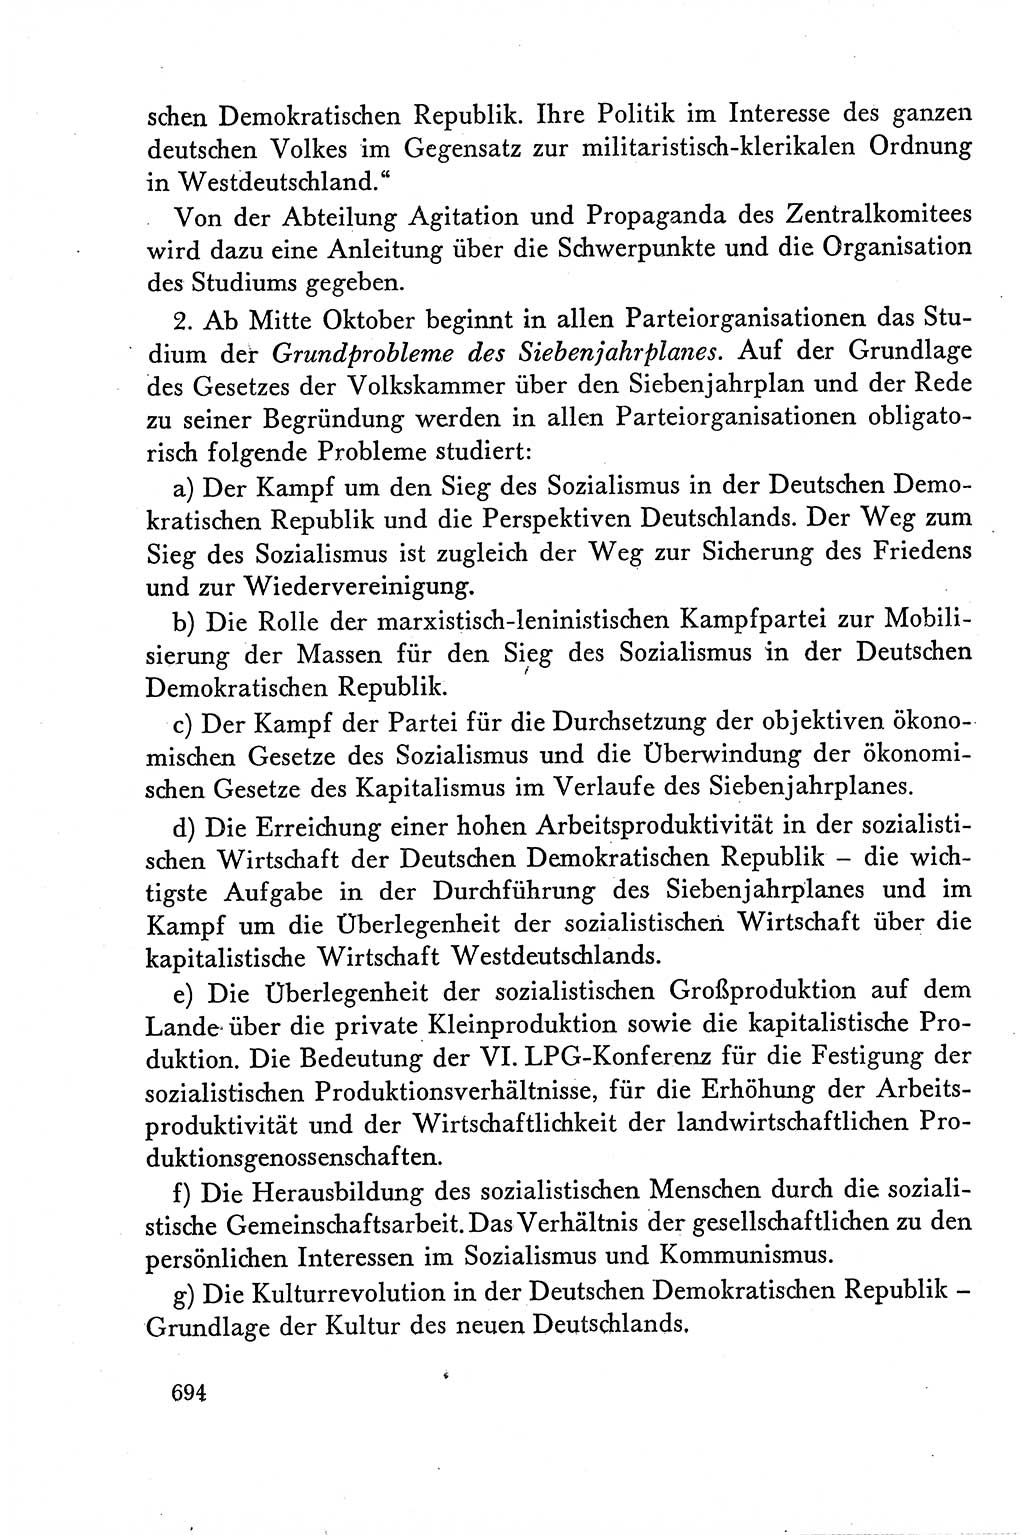 Dokumente der Sozialistischen Einheitspartei Deutschlands (SED) [Deutsche Demokratische Republik (DDR)] 1958-1959, Seite 694 (Dok. SED DDR 1958-1959, S. 694)